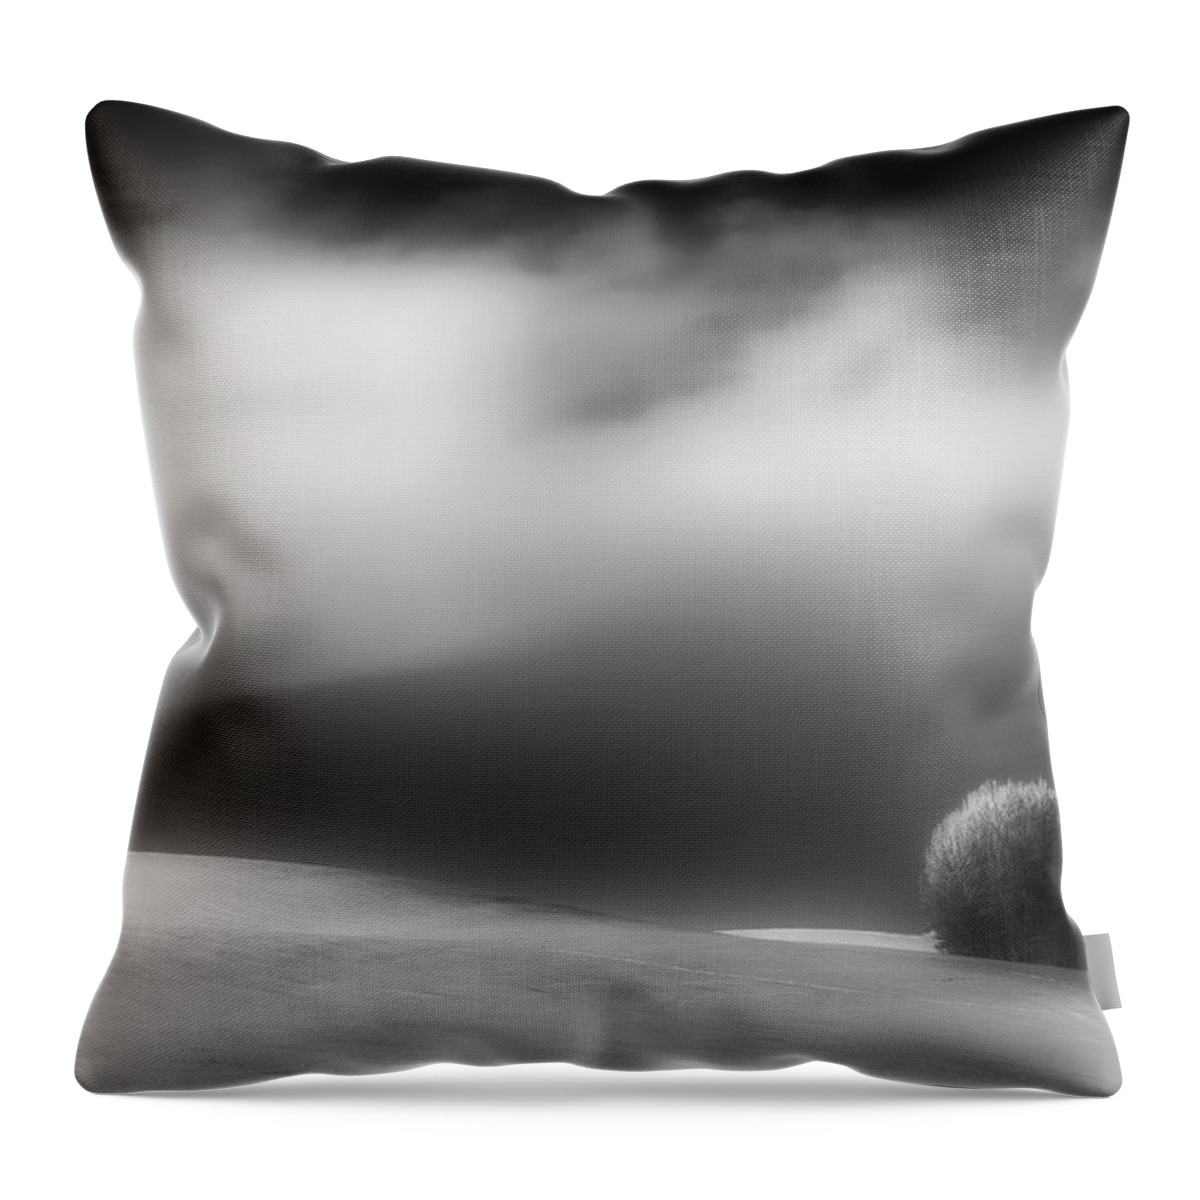 Monochrome Throw Pillow featuring the photograph Pillow Soft by Dan Jurak